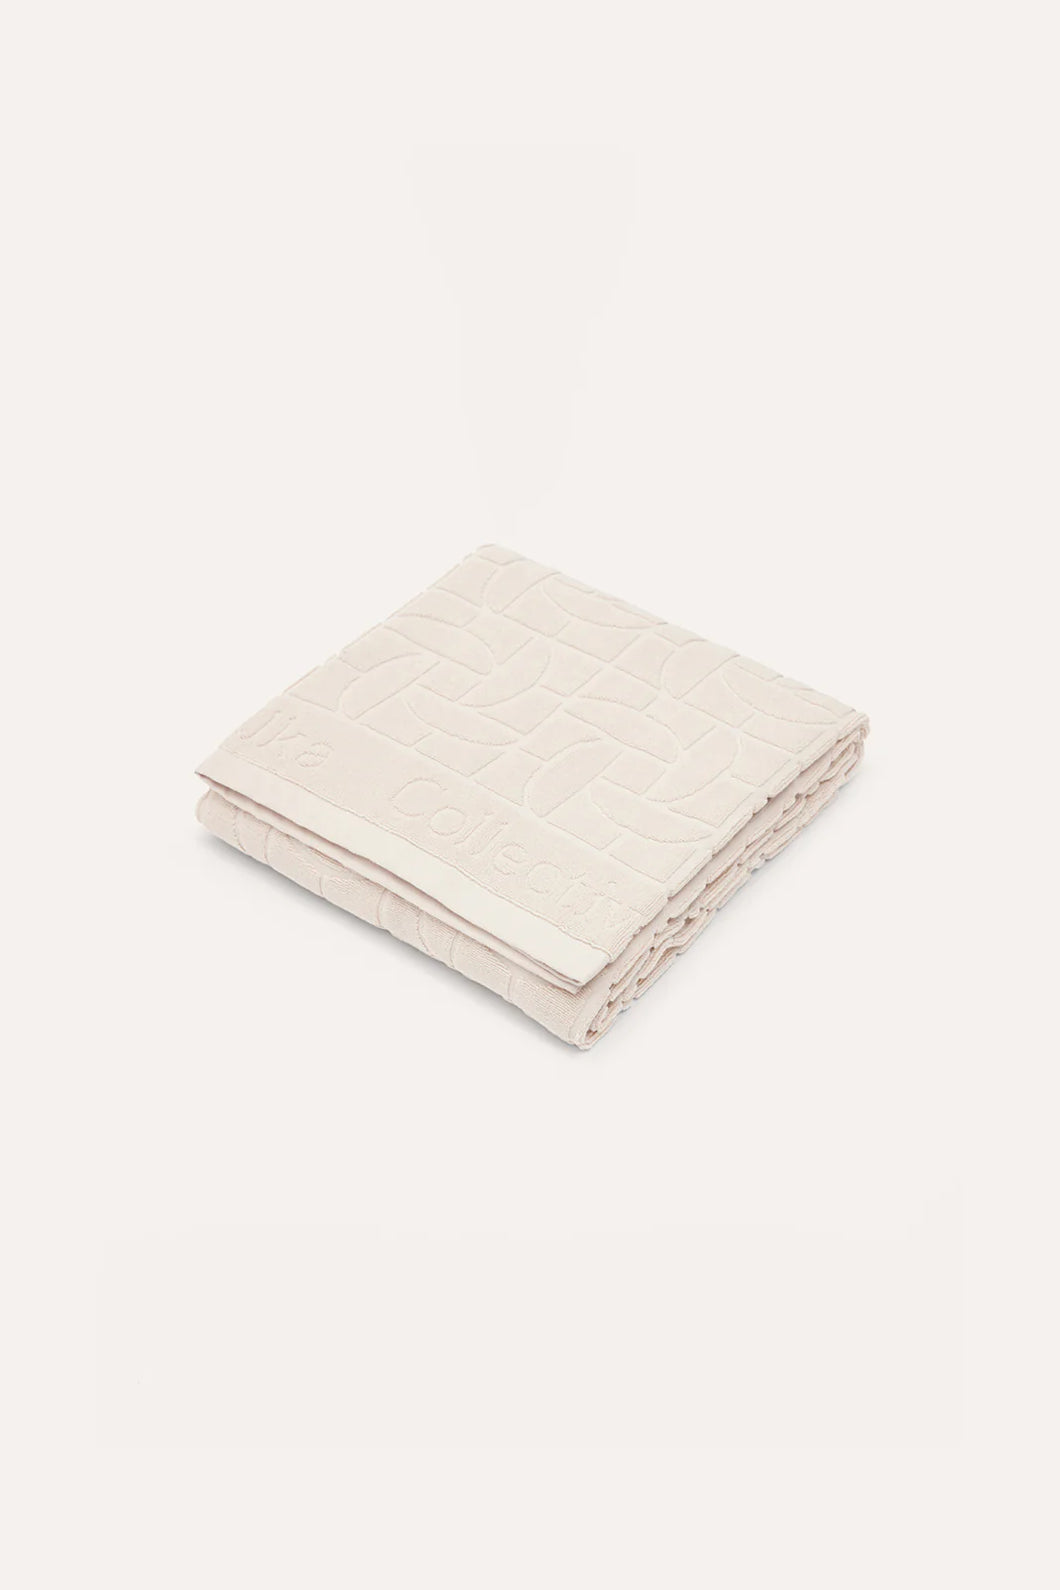 Santoria Towel | Ecru